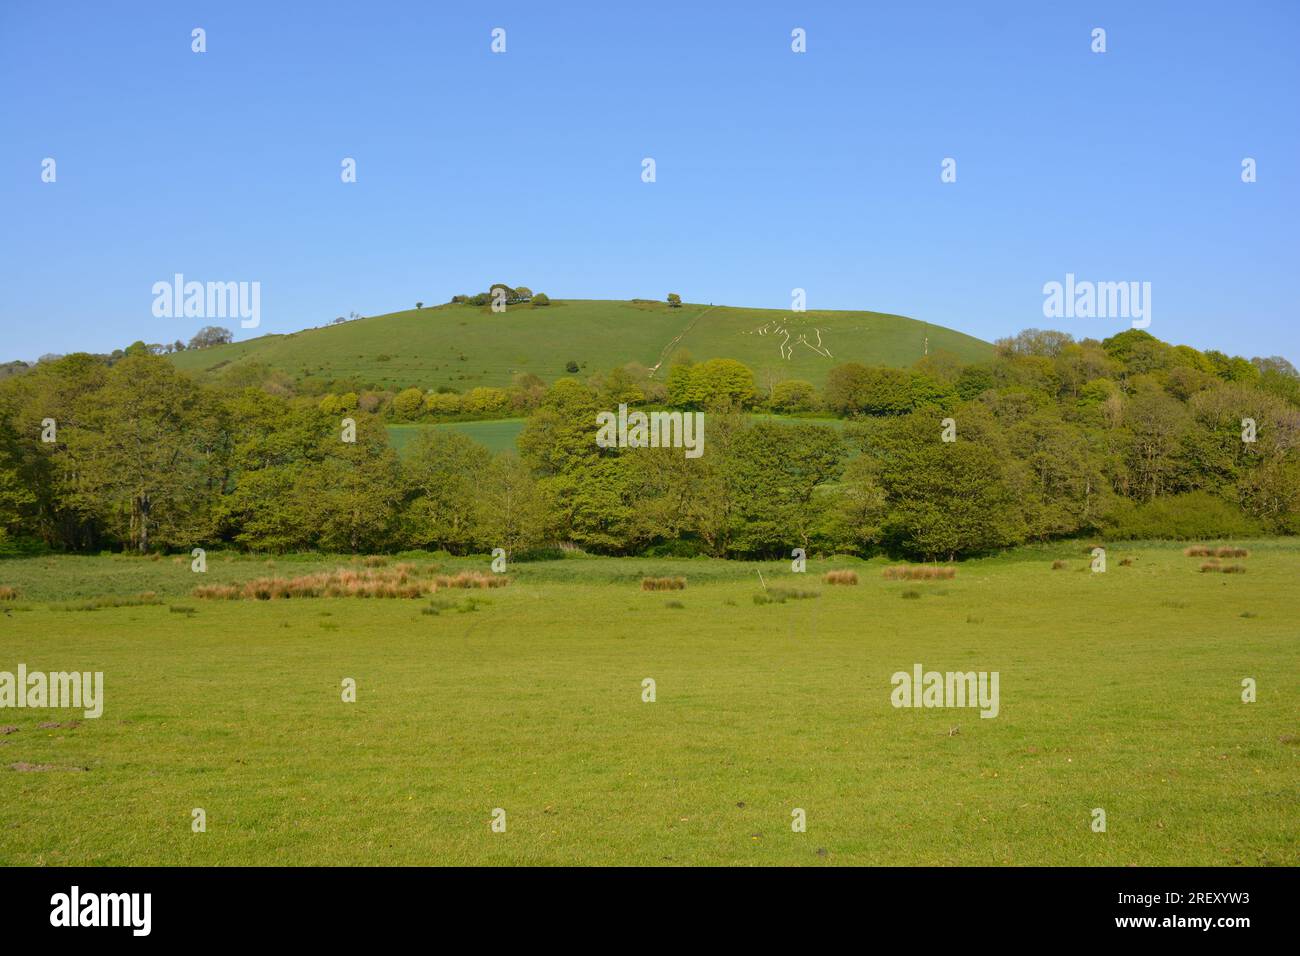 Paysage anglais d'été, vue sur un champ grêle luxuriant jusqu'au célèbre monument de la figure de colline géante taillée dans la craie, cerne Abbas, Dorset, Angleterre Banque D'Images